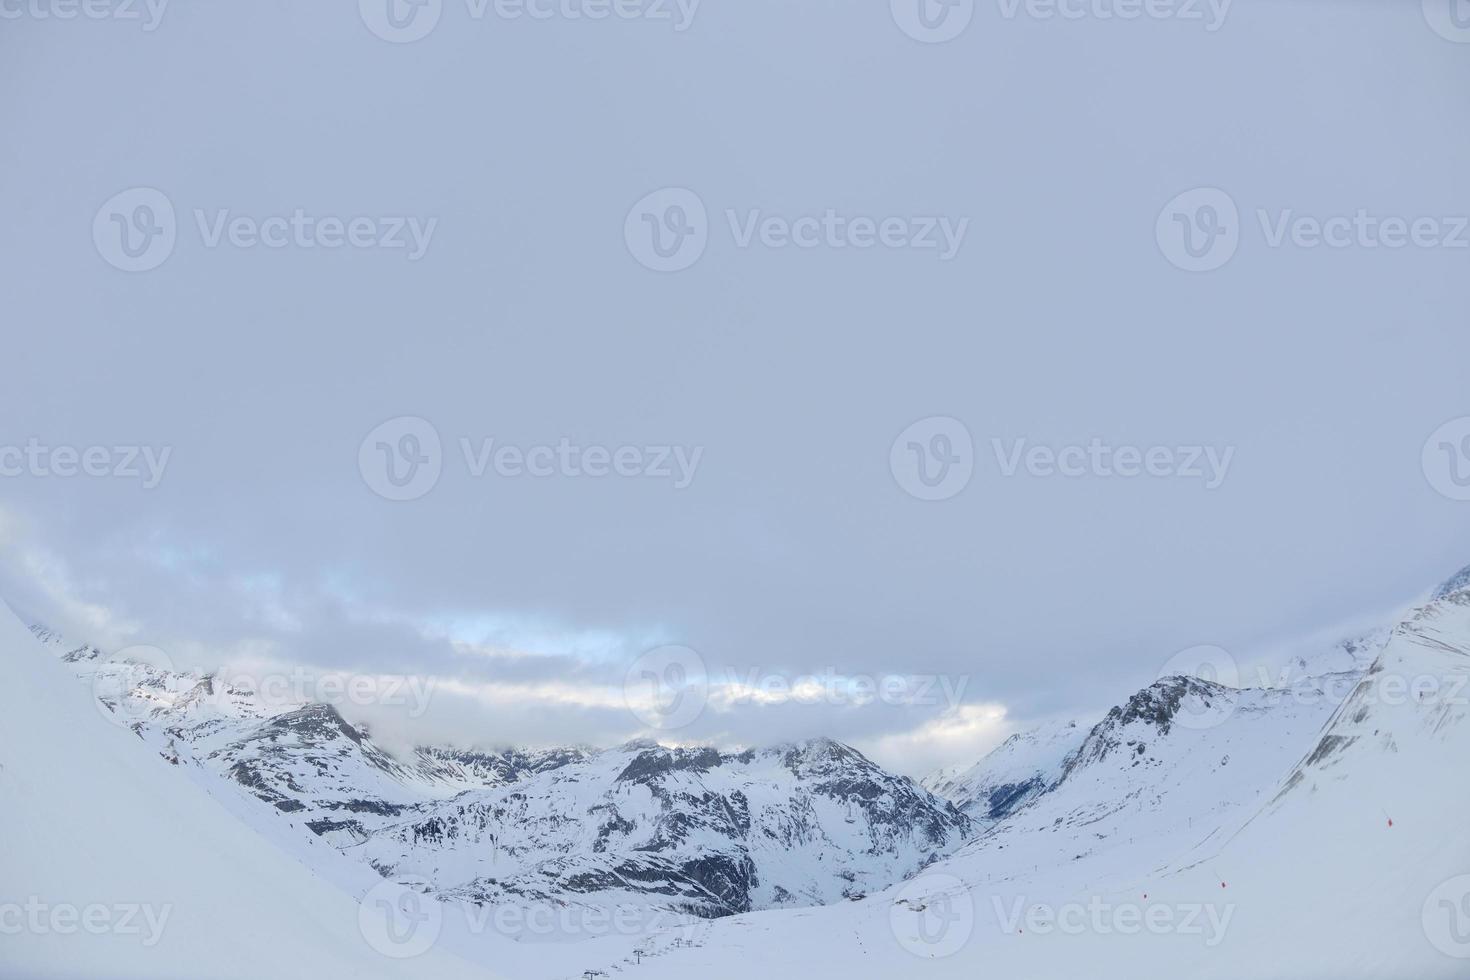 höga berg under snö på vintern foto